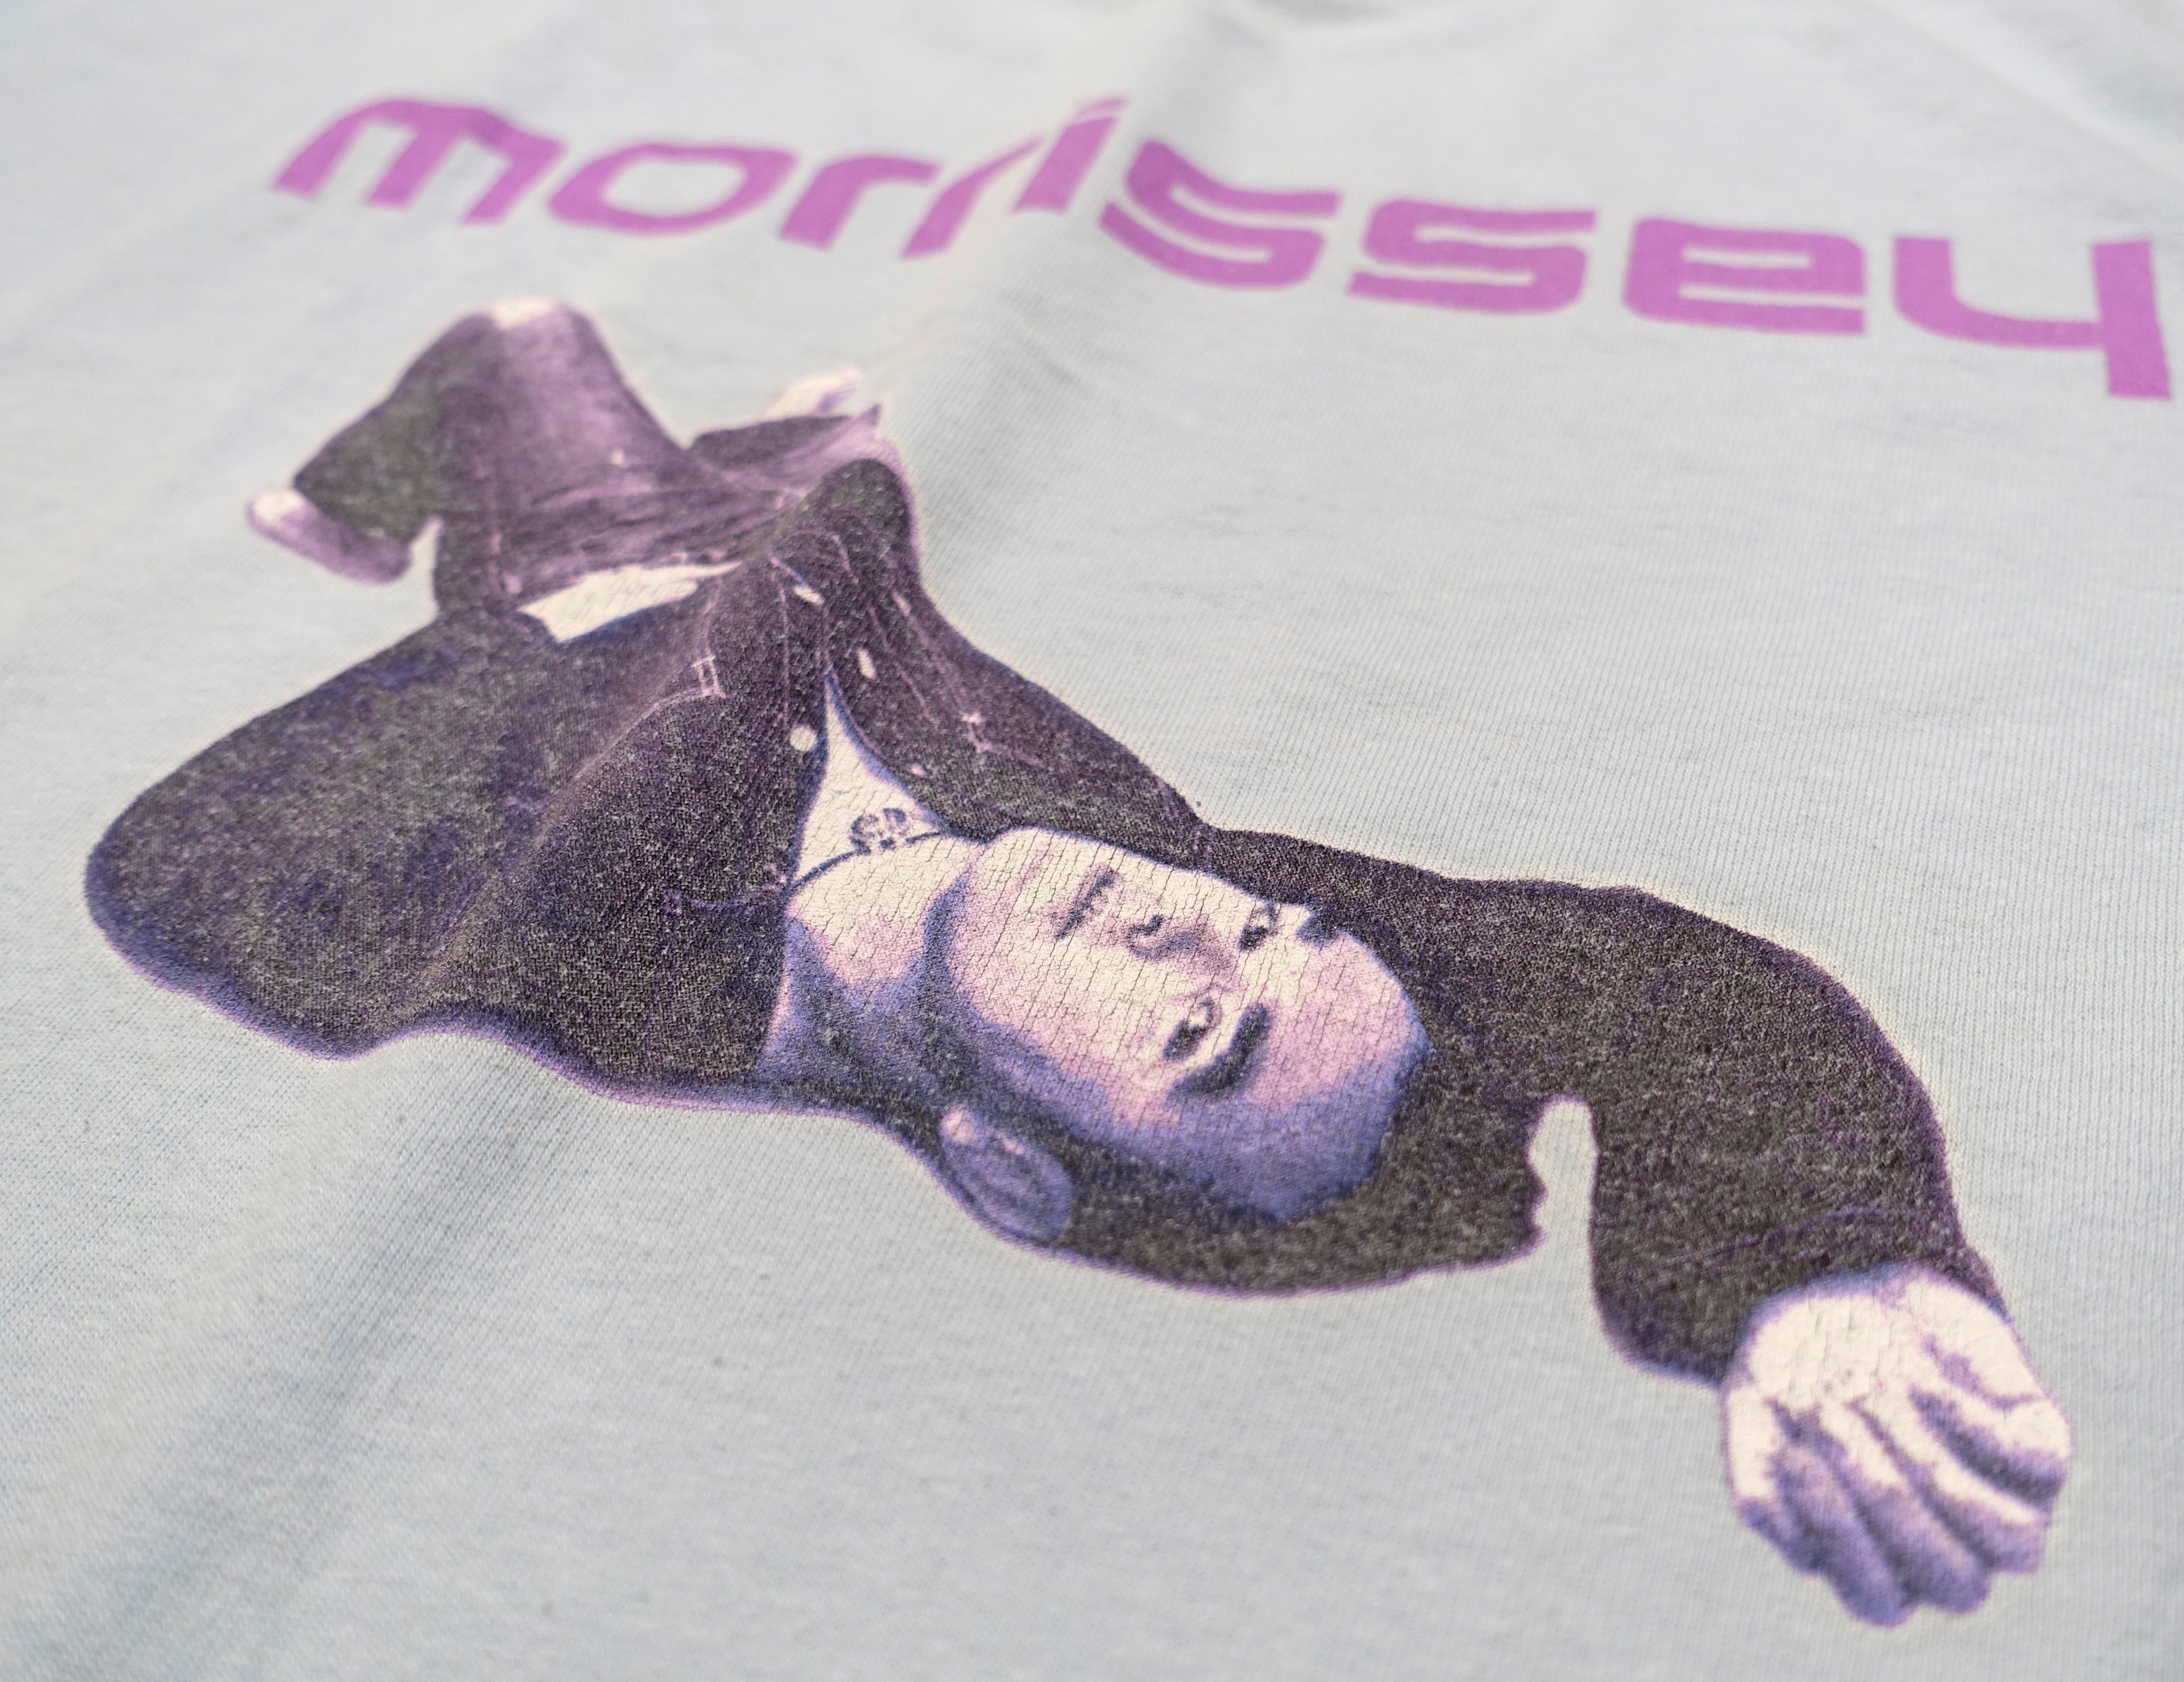 Morrissey - Earls Court 2004 Tour Shirt Size XL